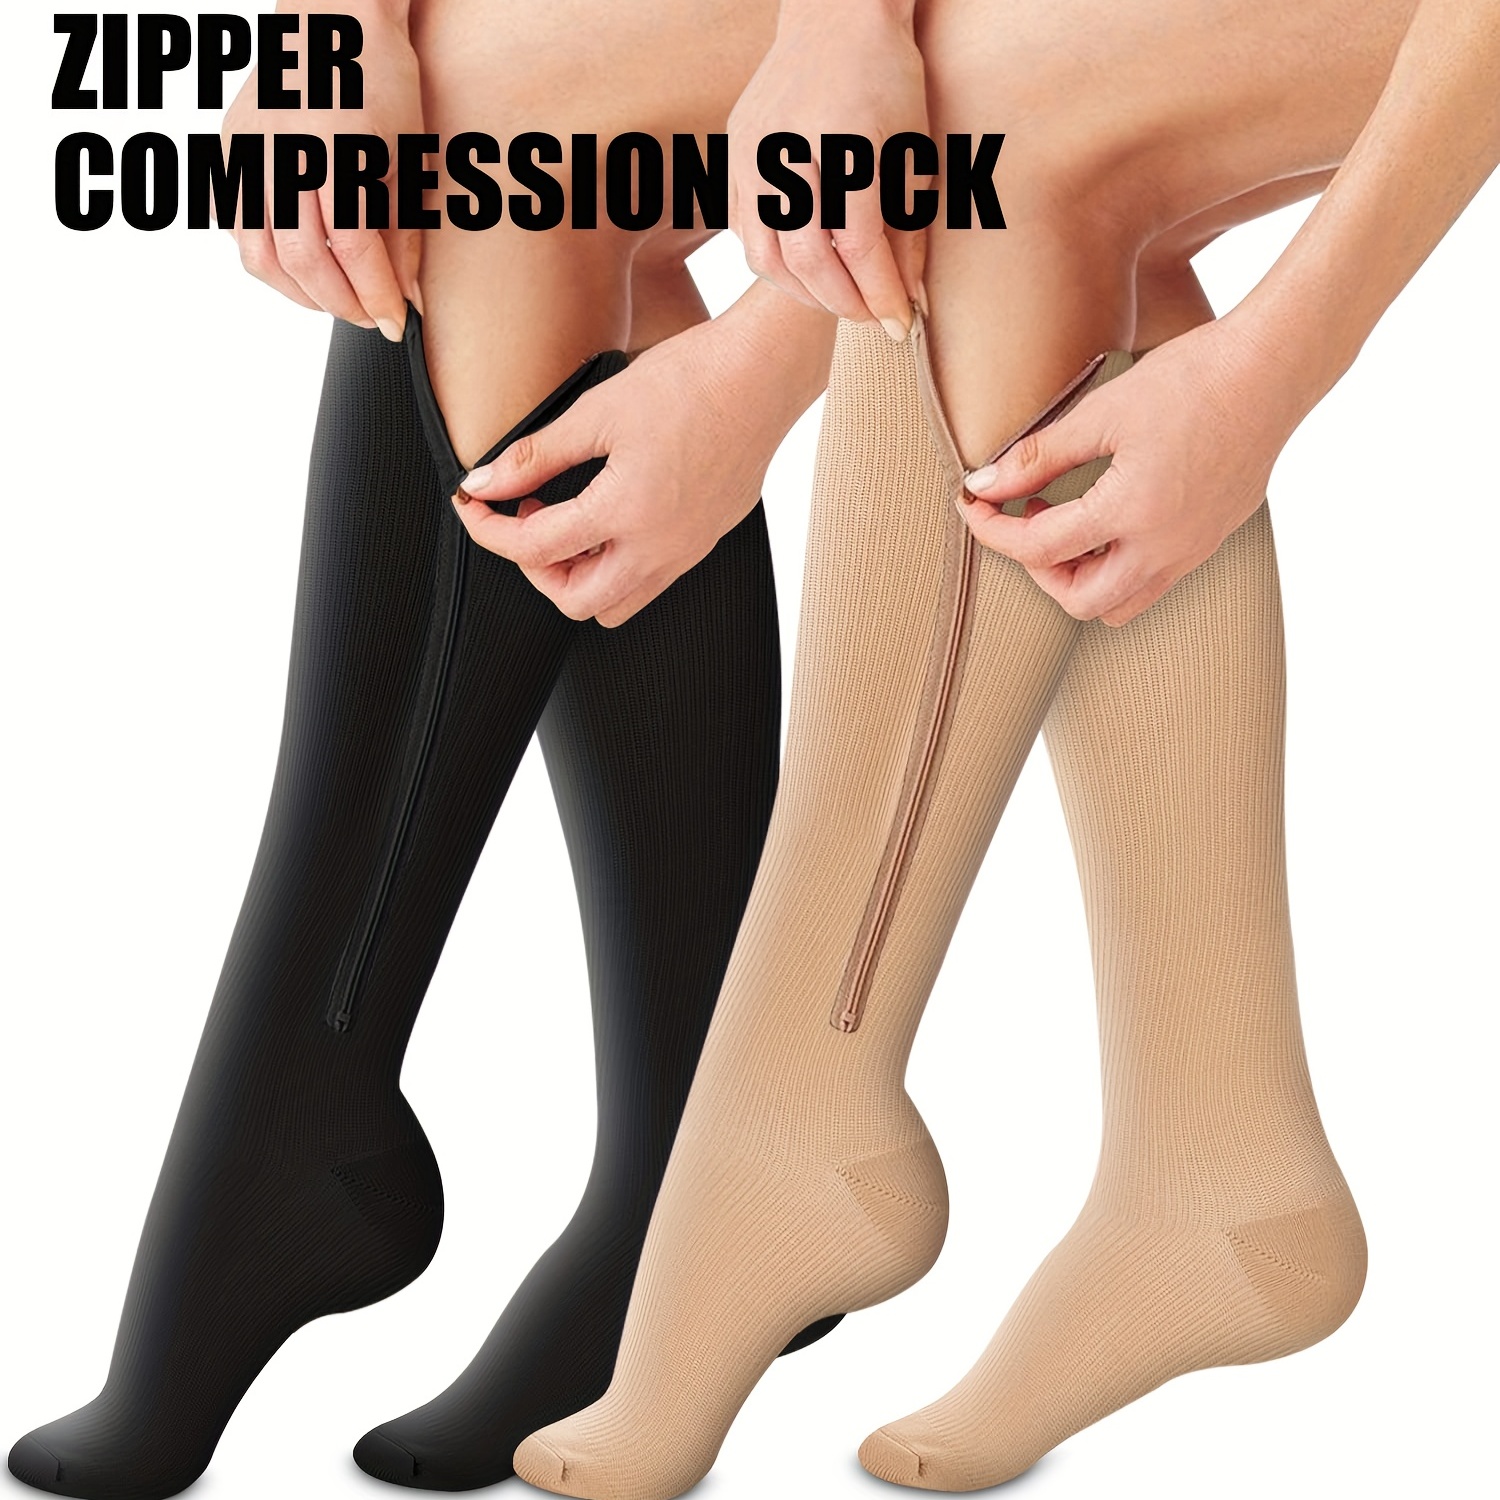 Zip It Gear -- Socks with zippers!